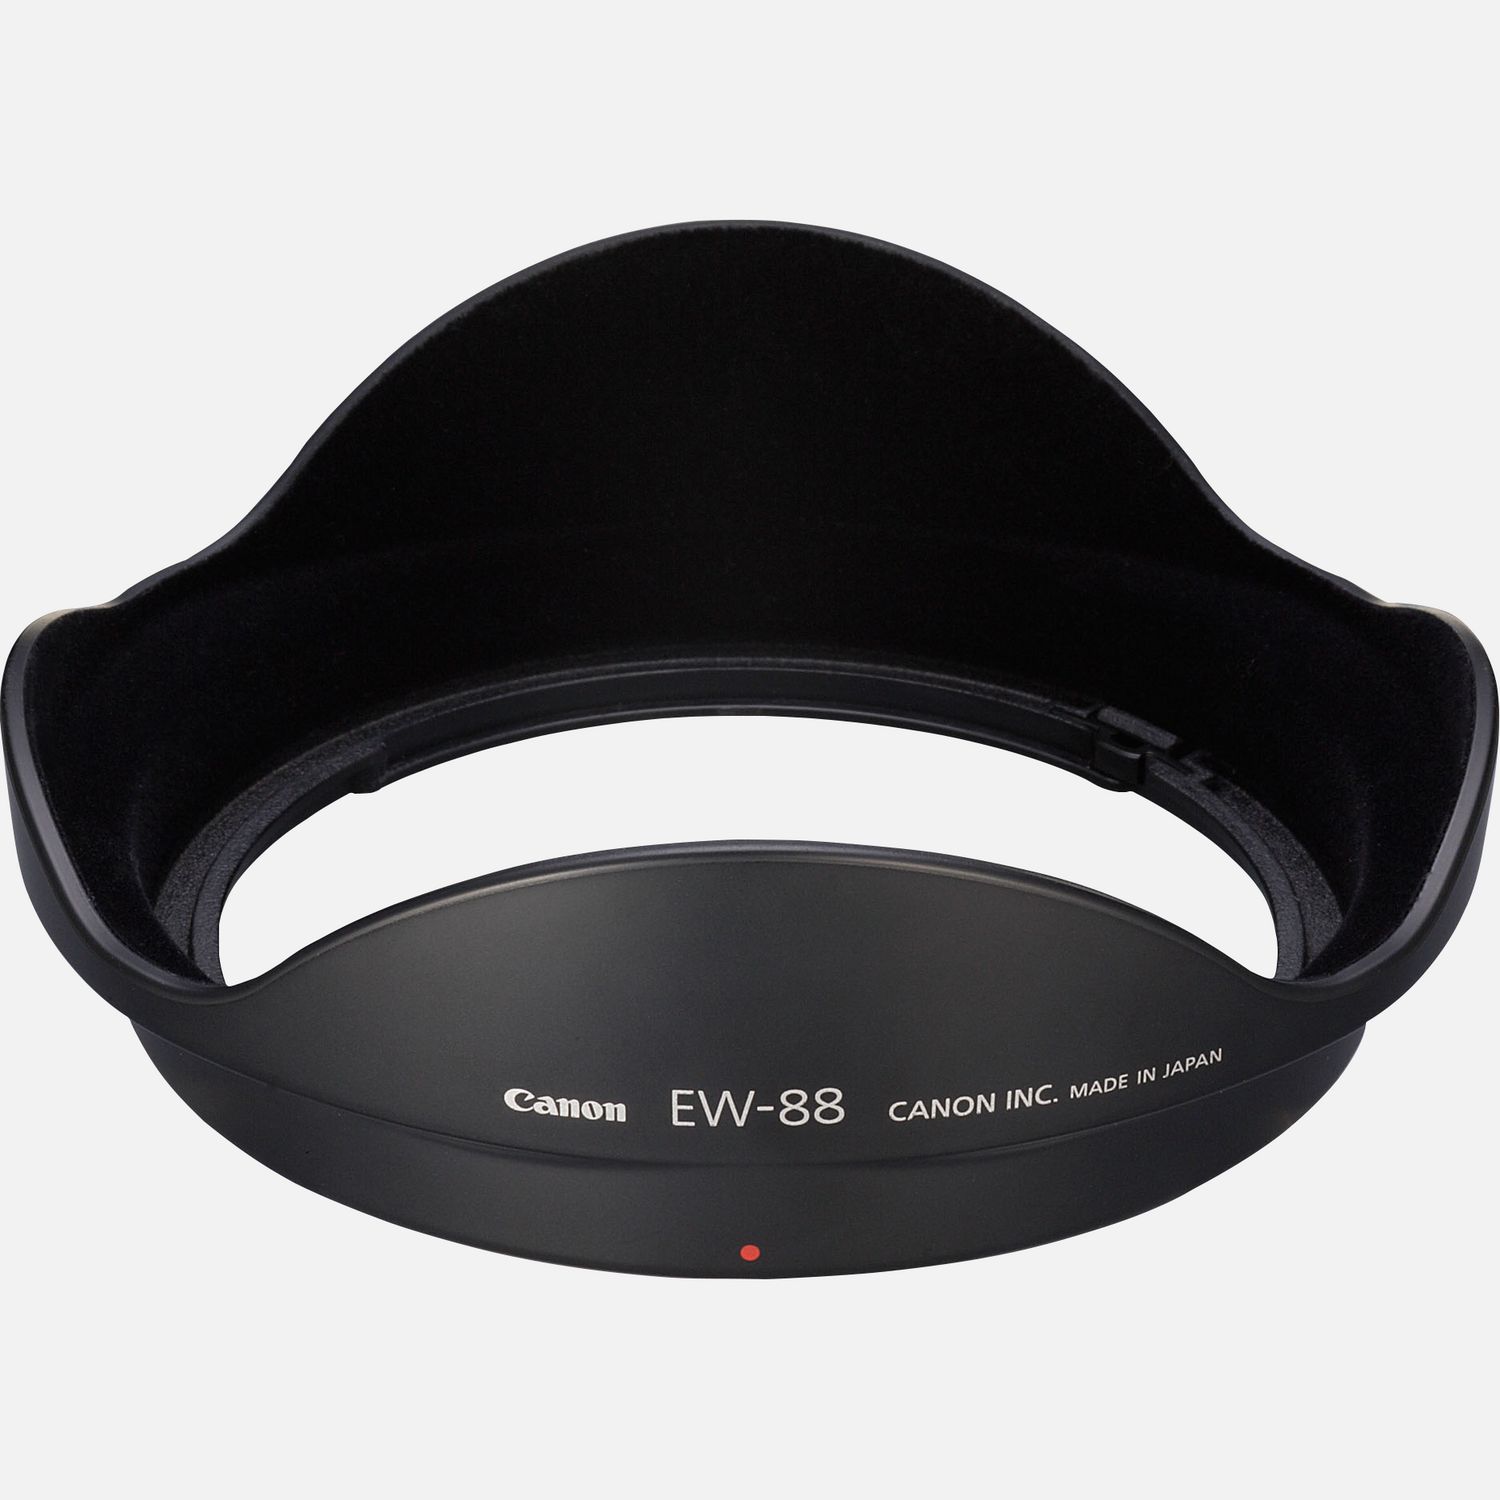 Passt auf das Objektiv EF 16-35mm 1:2,8L II USM, reduziert Reflexionen, die durch direkt auf die Frontlinse auffallendes Licht hervorgerufen werden.      Kompatibilitt       EF 1635mm f/2.8L II USM